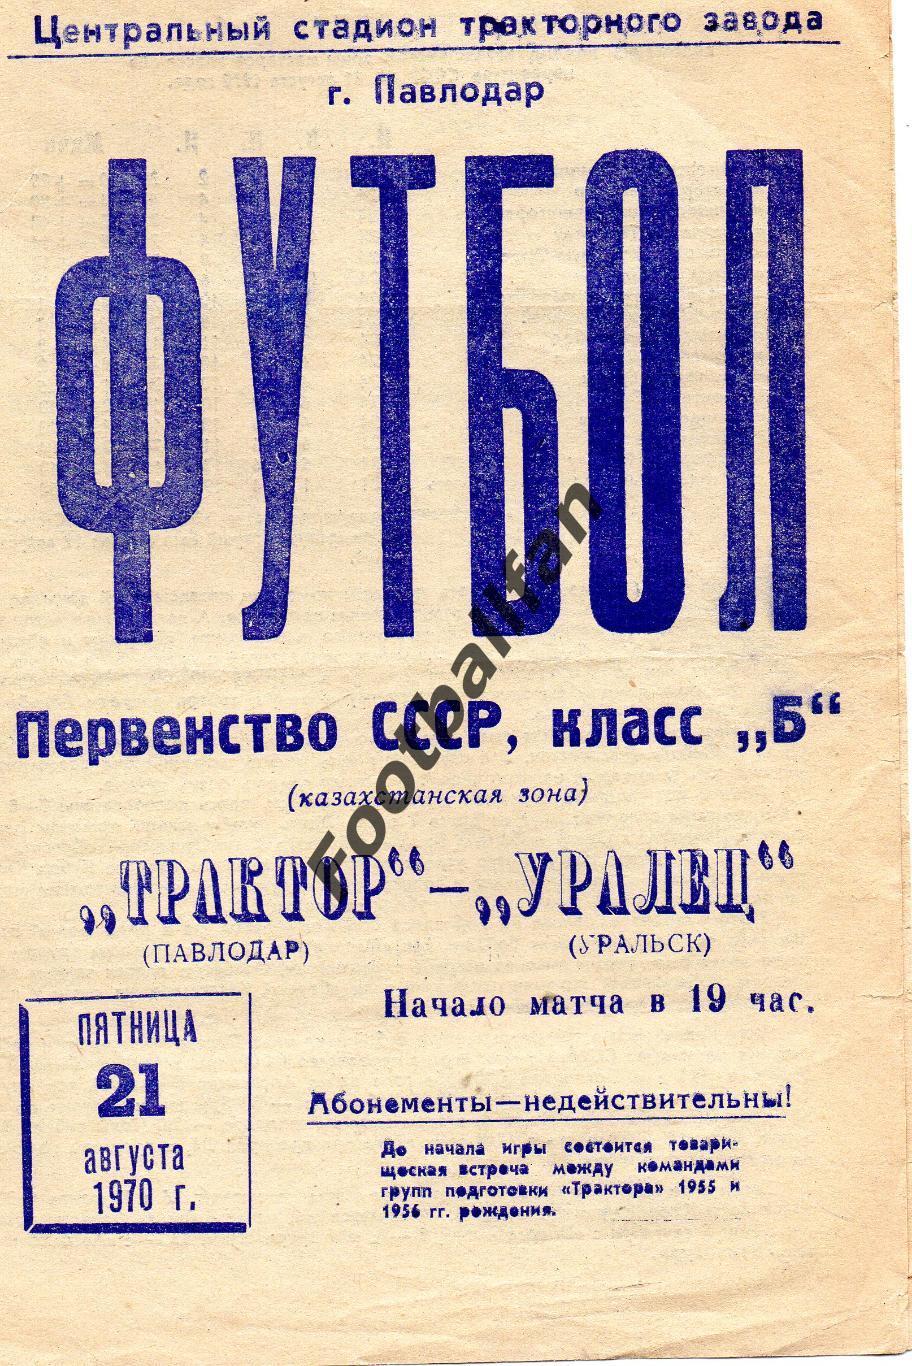 Трактор Павлодар - Уралец Уральск 21.08.1970